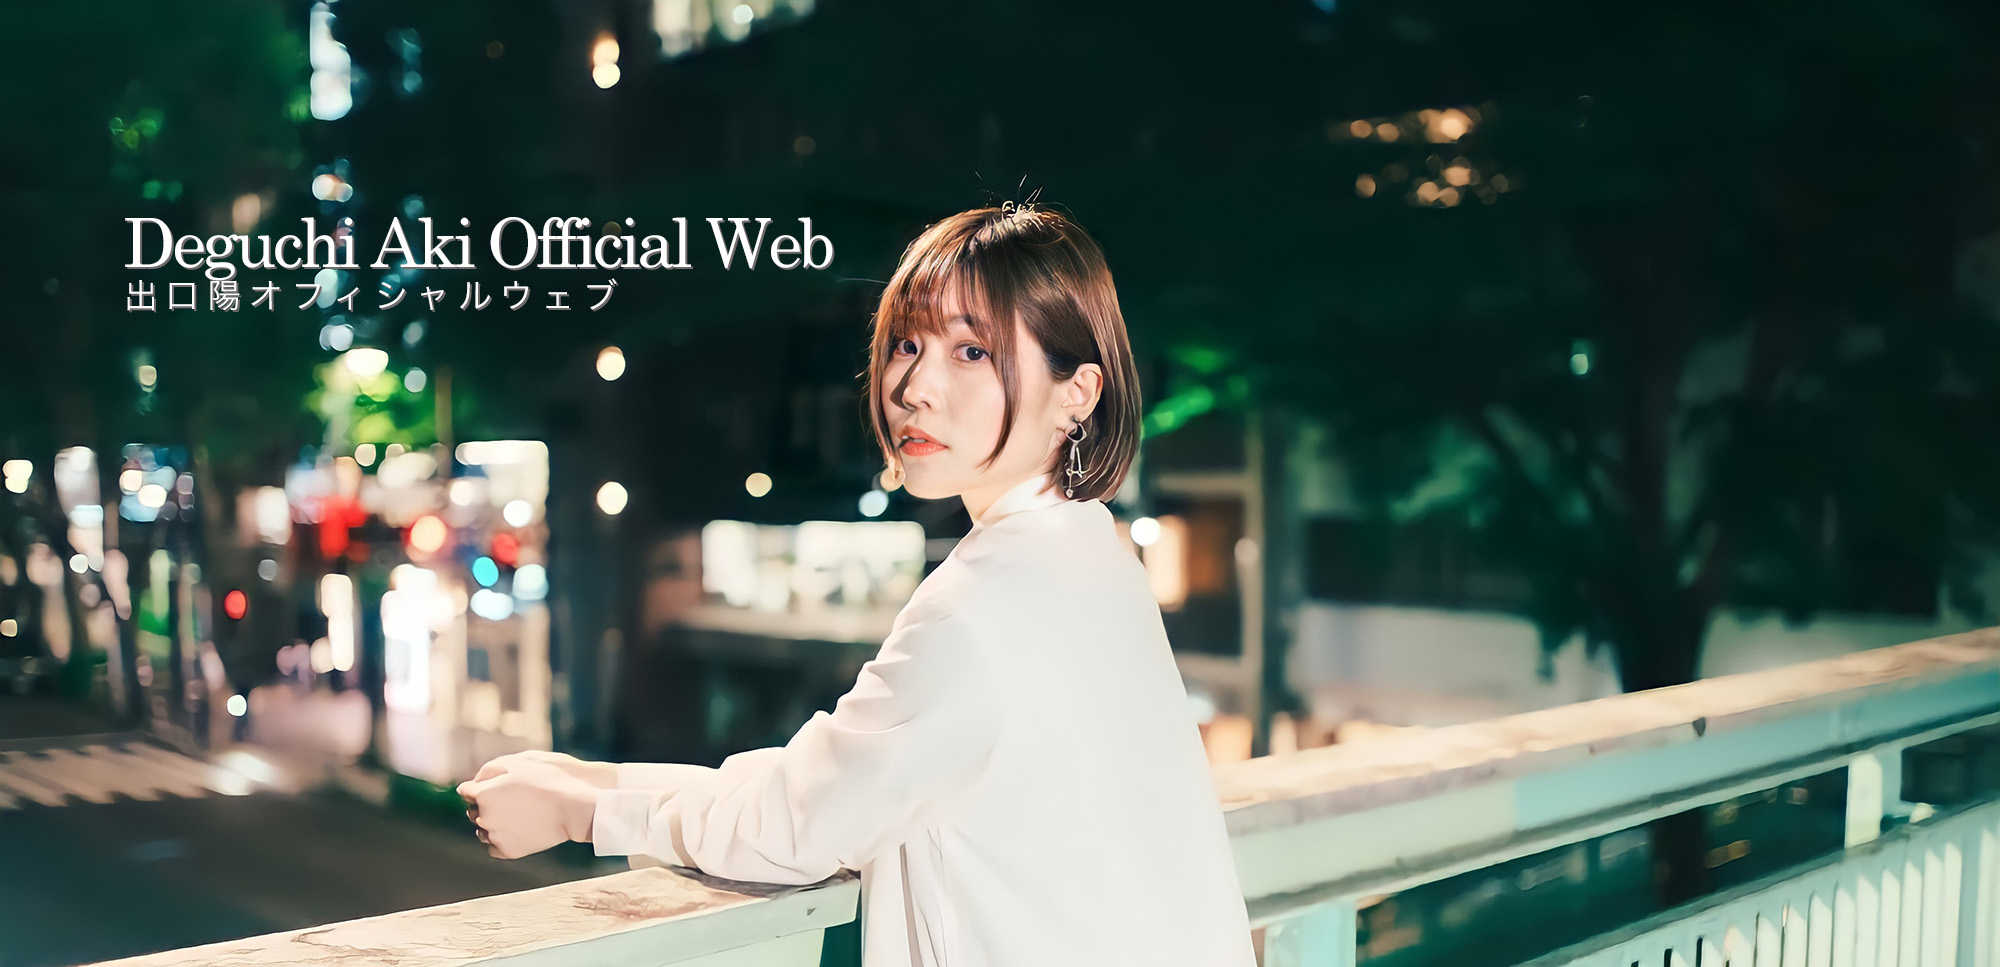 DeguchiAki Official Web